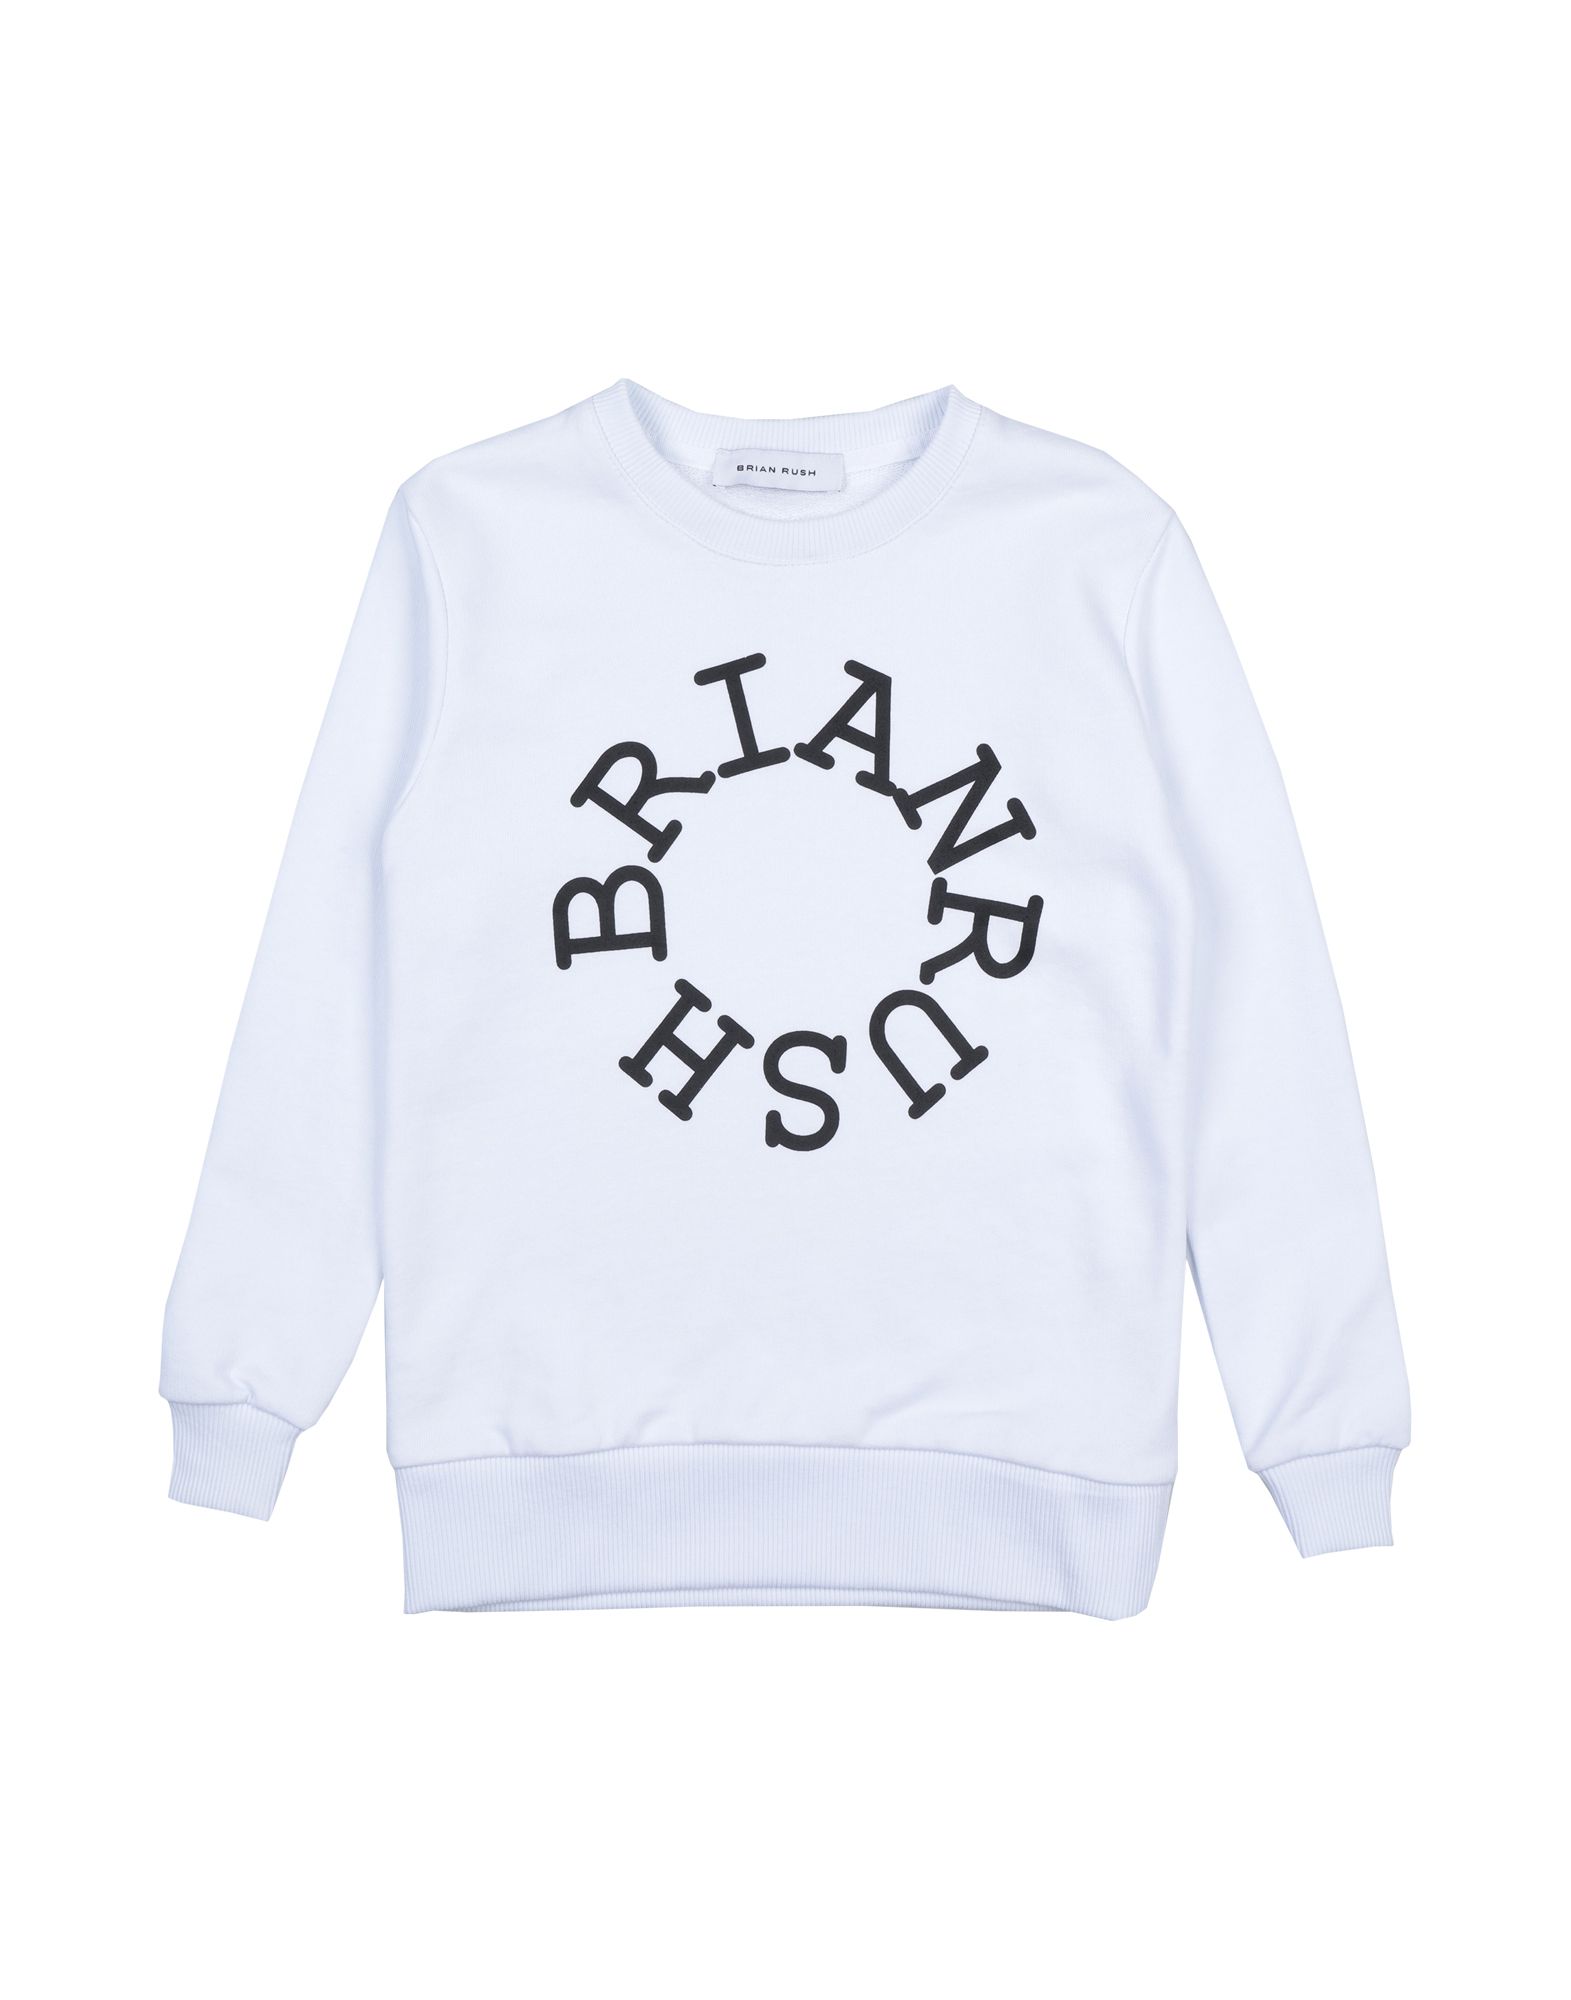 Brian Rush Kids' Sweatshirts In White